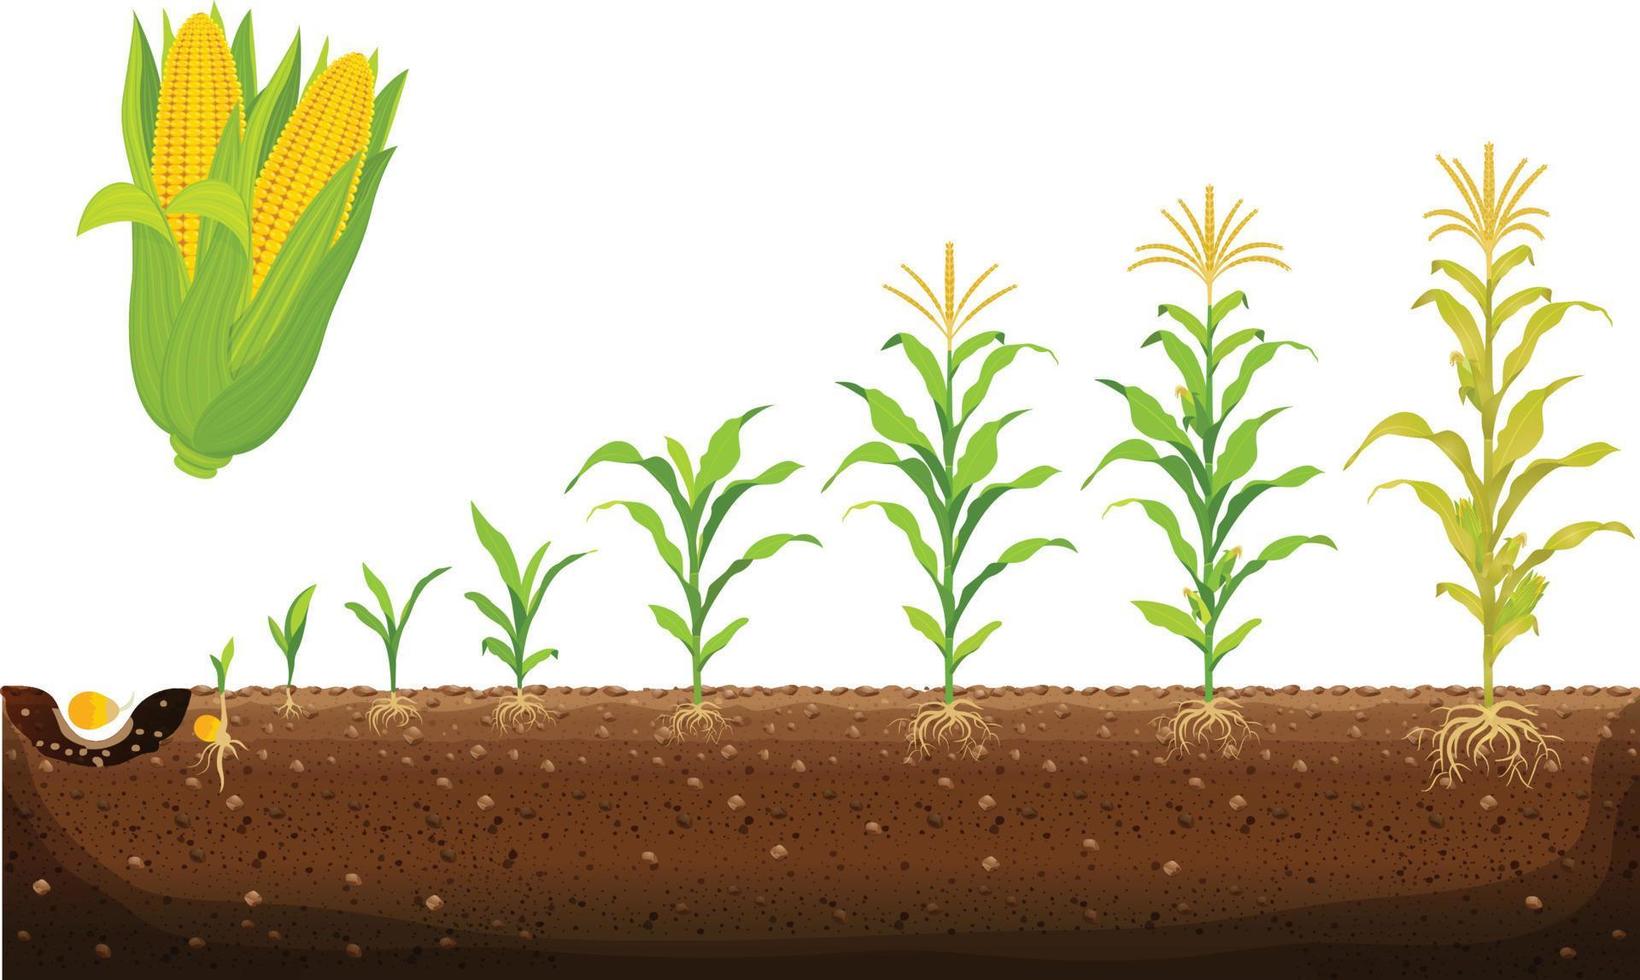 le cycle de croissance du maïs. stades de croissance du maïs illustration vectorielle au design plat. processus de plantation du plant de maïs. la germination des graines, la formation des racines, les pousses avec des feuilles et le stade de la récolte vecteur